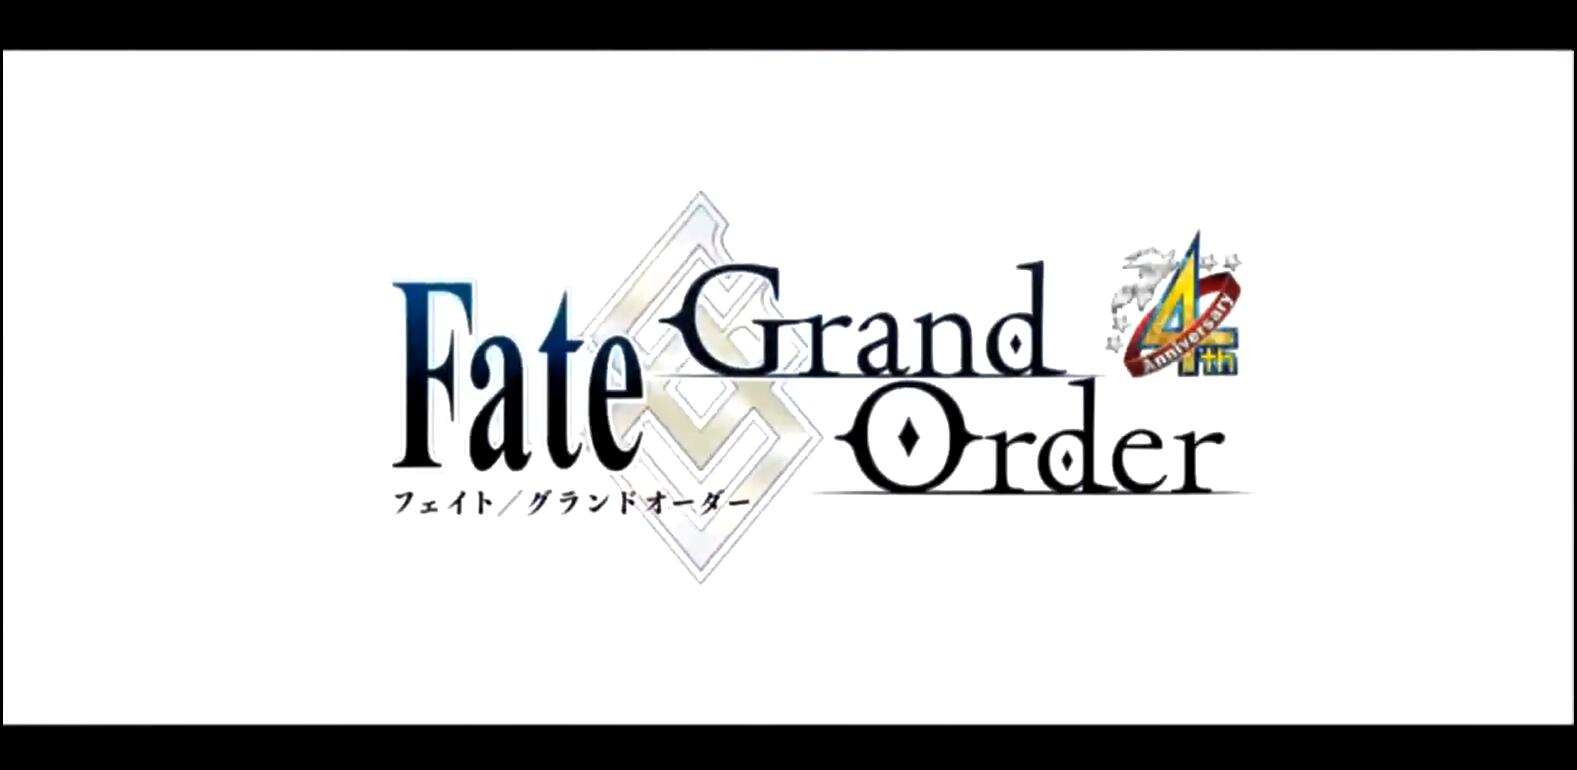 人气角色悉数登场 《Fate/Grand Order》四周年纪念视频